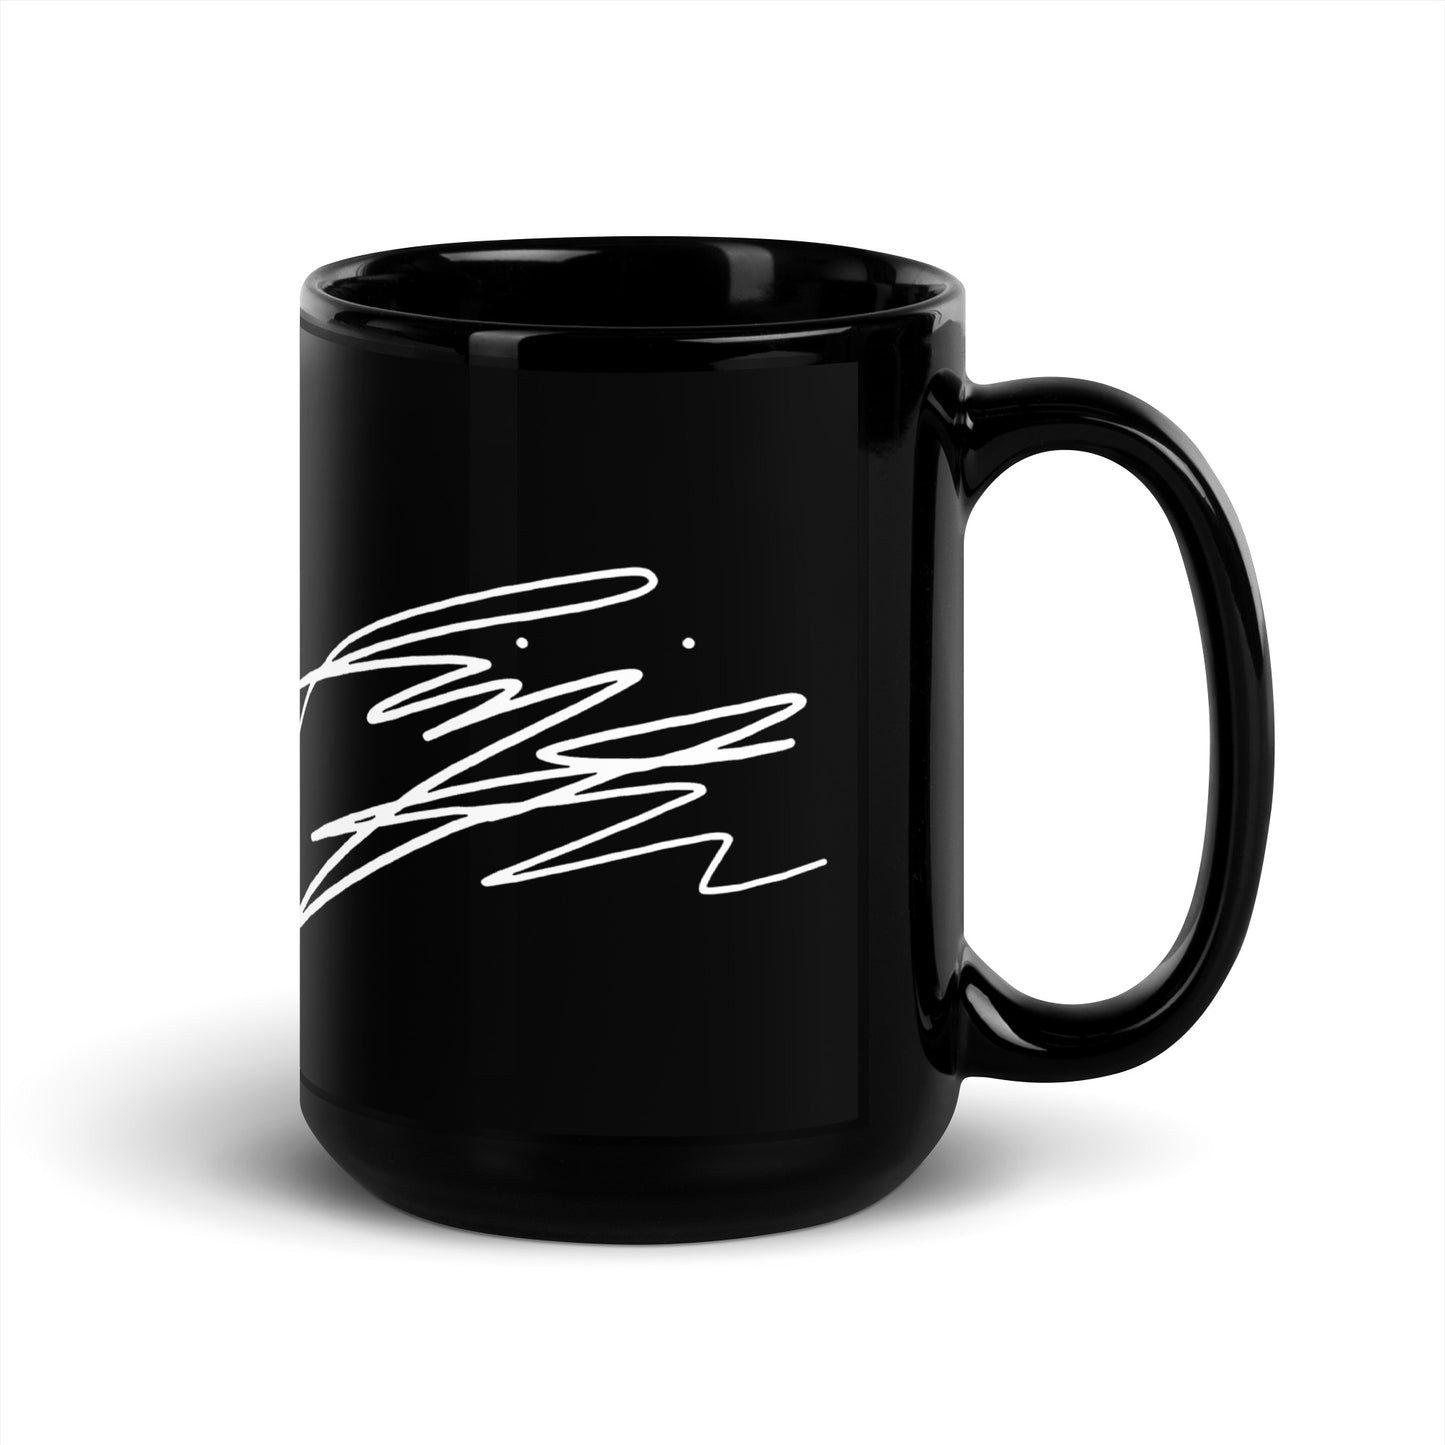 BTS RM, Kim Nam-joon Autograph Ceramic Mug